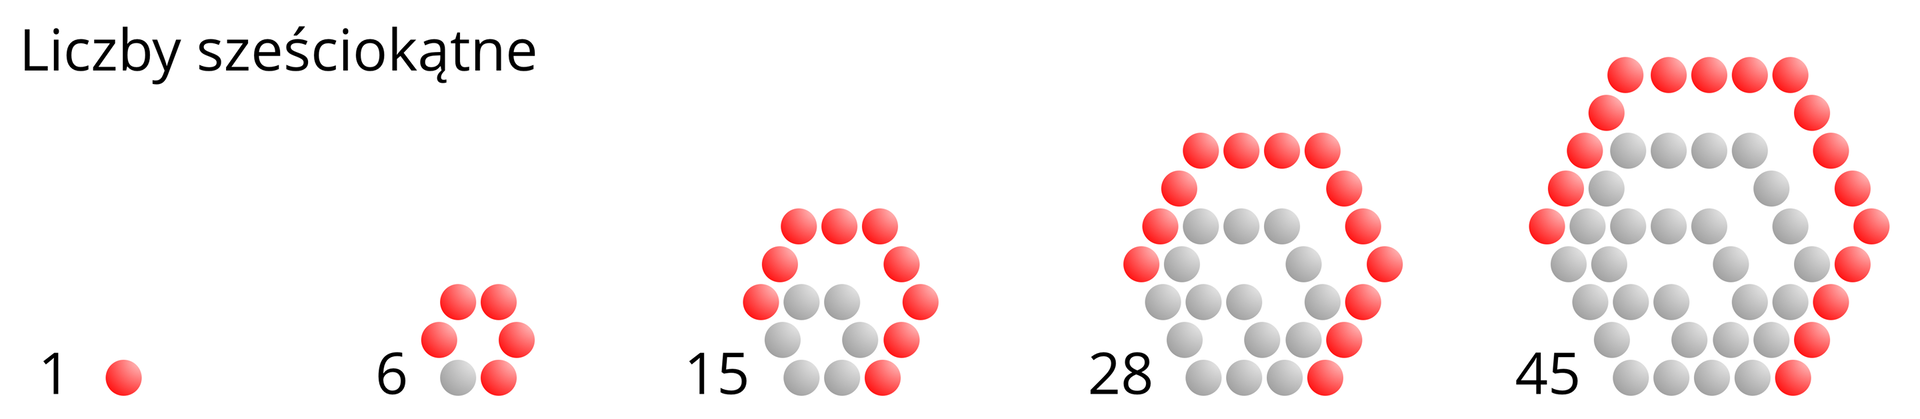 Ilustracja przedstawia graficzną interpretację pięciu kolejnych liczb sześciokątnych. Liczby te przedstawione są za pomocą kolorowych kropek: szarych i czerwonych. Cyfrę jeden reprezentuje jedna czerwona kropka. Cyfrę sześć reprezentuje sześć kropek układających się w kształt sześciokąta o boku o długości dwóch kropek: pięć czerwonych i jedna szara. Liczbę piętnaście reprezentuje piętnaście kropek ułożonych w kształt sześciokąta o boku o długości trzech kropek, przy czym jest on nadbudowany nad poprzednim kształtem – figury te mają wspólny lewy dolny wierzchołek. Każda kolejna reprezentacja liczb sześciokątnych jest zbudowana na poprzednich liczbach. W interpretacji liczby piętnaście mamy dziewięć czerwonych i sześć szarych kropek. Liczbę dwadzieścia osiem reprezentuje dwadzieścia osiem kropek ułożonych w kształt trzech coraz większych sześciokątów o wspólnym lewym dolnym wierzchołku i długościach boków: dwie, trzy i cztery kropki. Mamy tu  trzynaście czerwonych i piętnaście szarych kropek. Liczbę czterdzieści pięć reprezentują kropki układające się w kształt czterech sześciokątów o wspólnym lewym dolnych wierzchołku i bokach o długościach: dwie, trzy, cztery i pięć kropek. Mamy tu siedemnaście czerwonych  i dwadzieścia osiem szarych kropek. Na czerwono zaznaczone są kropki układające się w cztery wybrane boki wielokątów reprezentujących liczby sześciokątne, to jest w bok górny lewy, górny, górny prawy i dolny prawy.